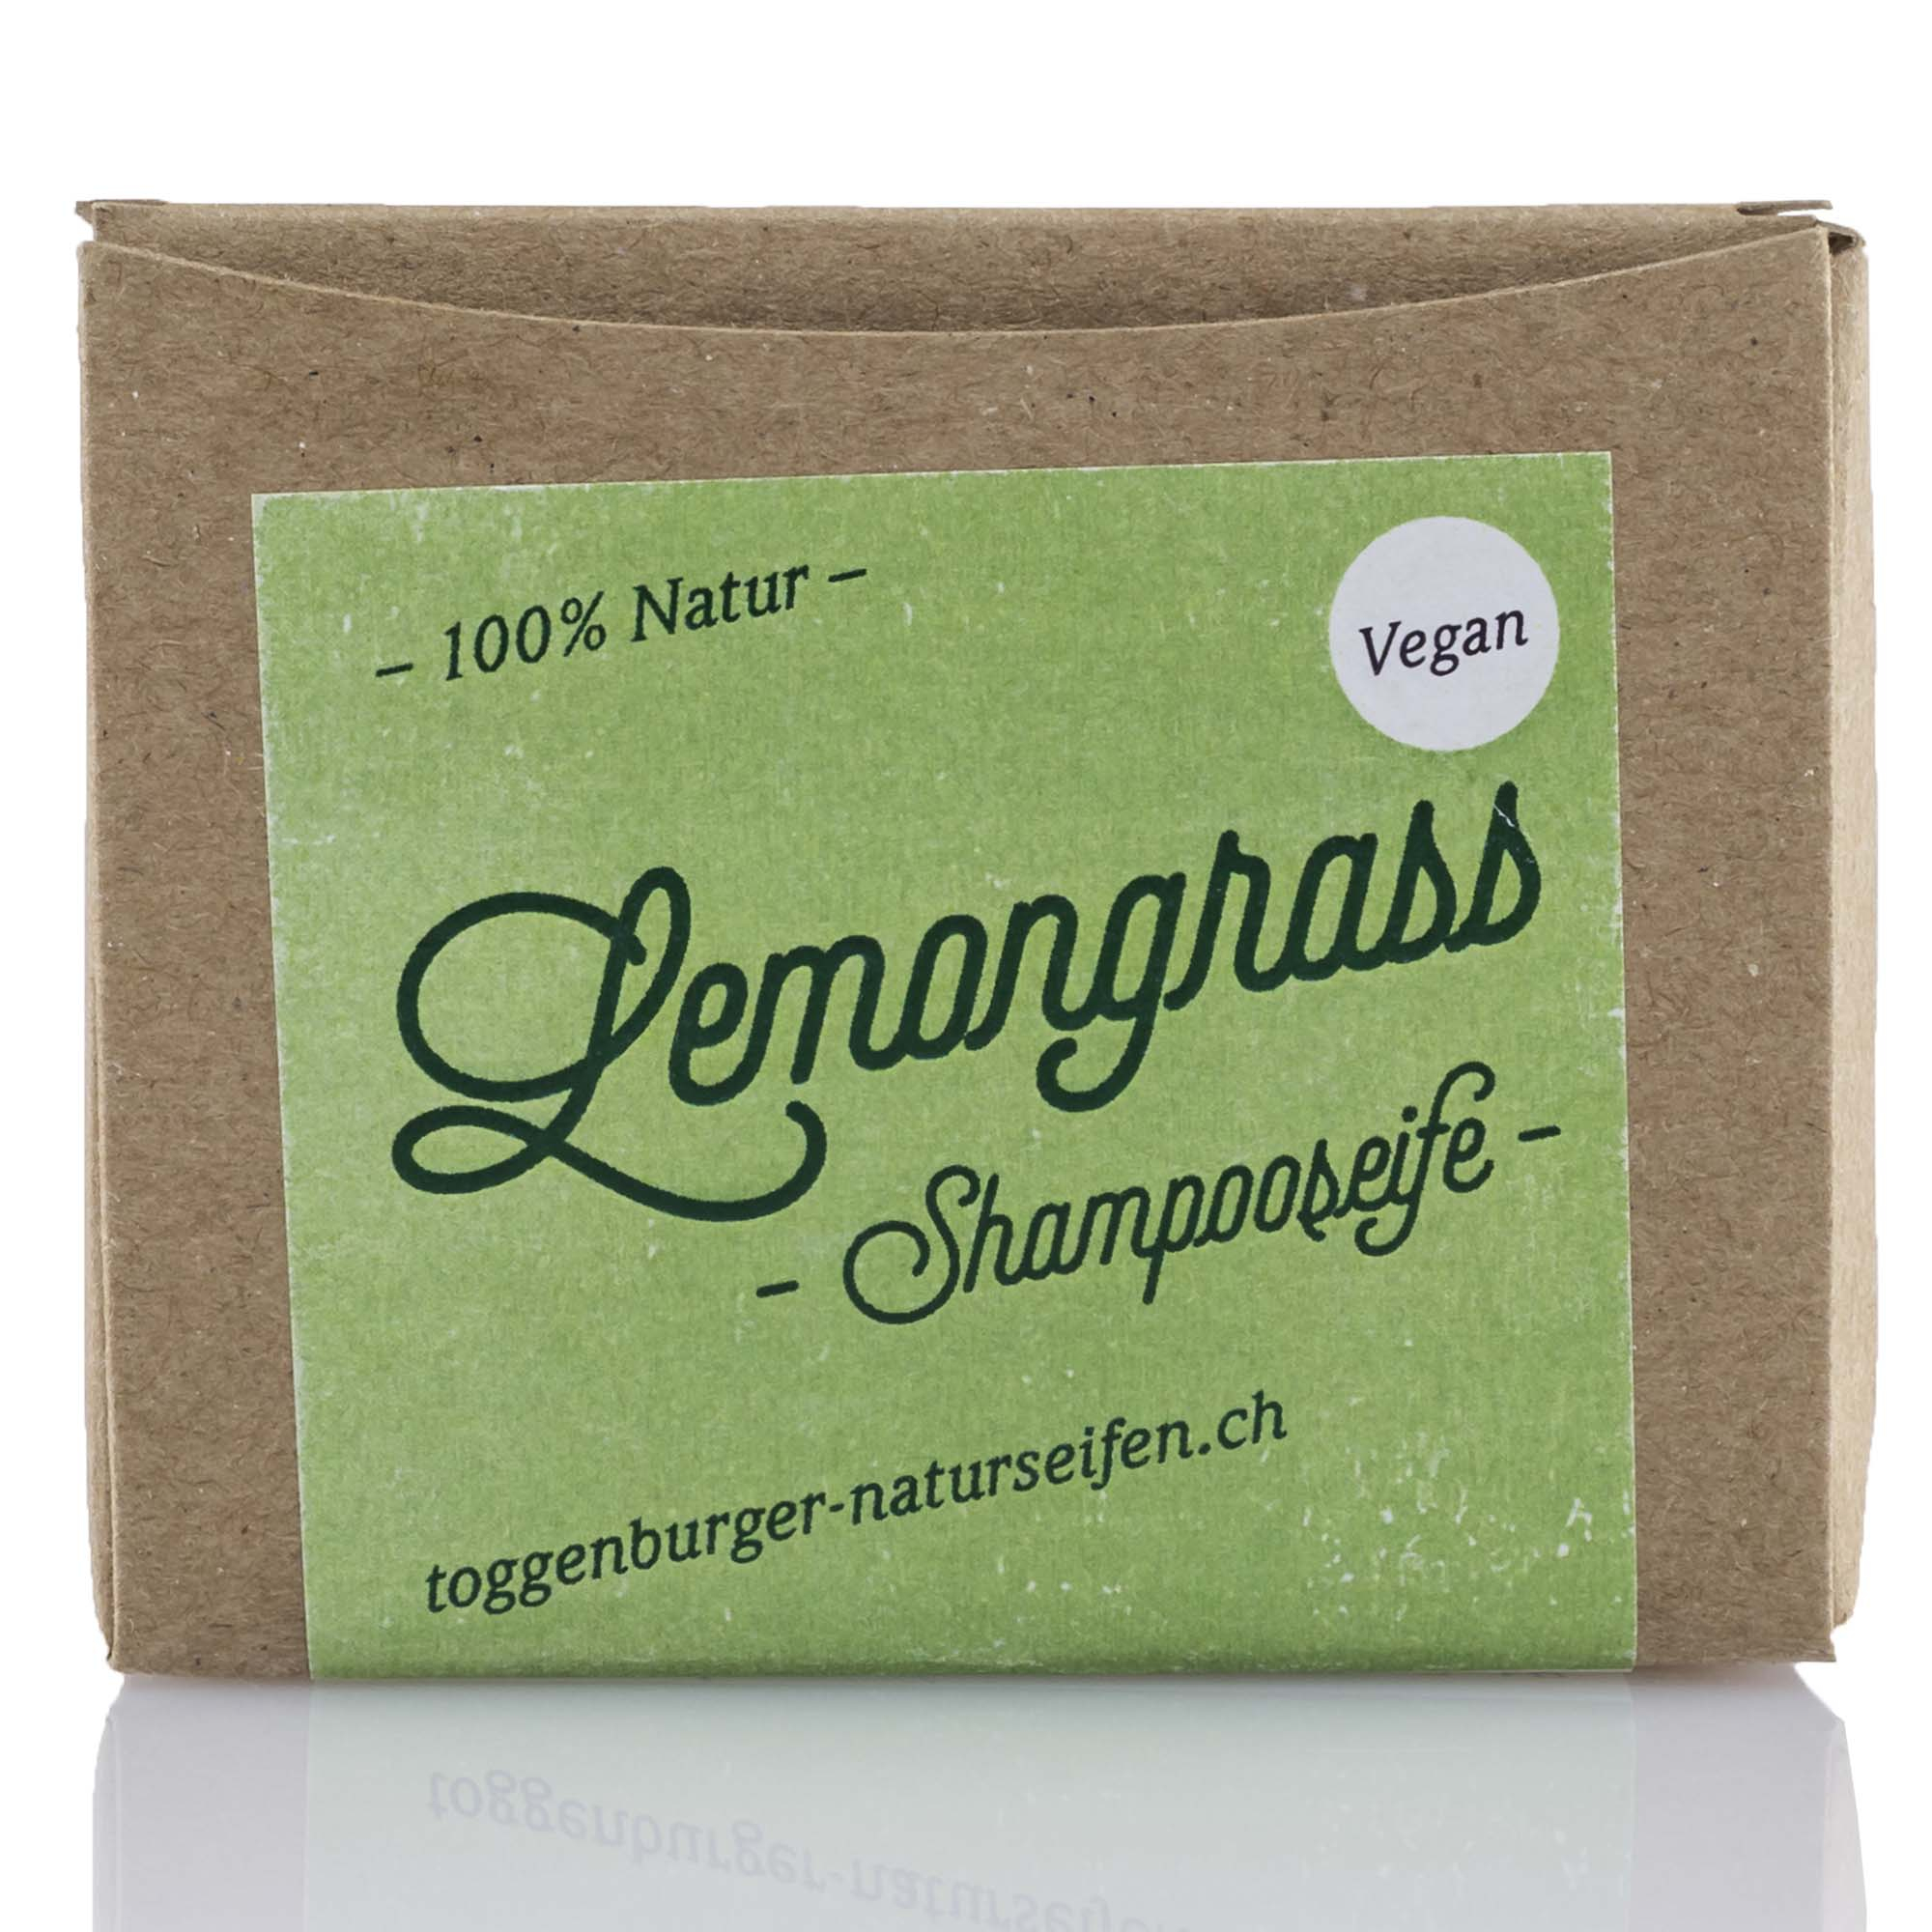 Vegane Shampooseife "Lemongrass", 100g